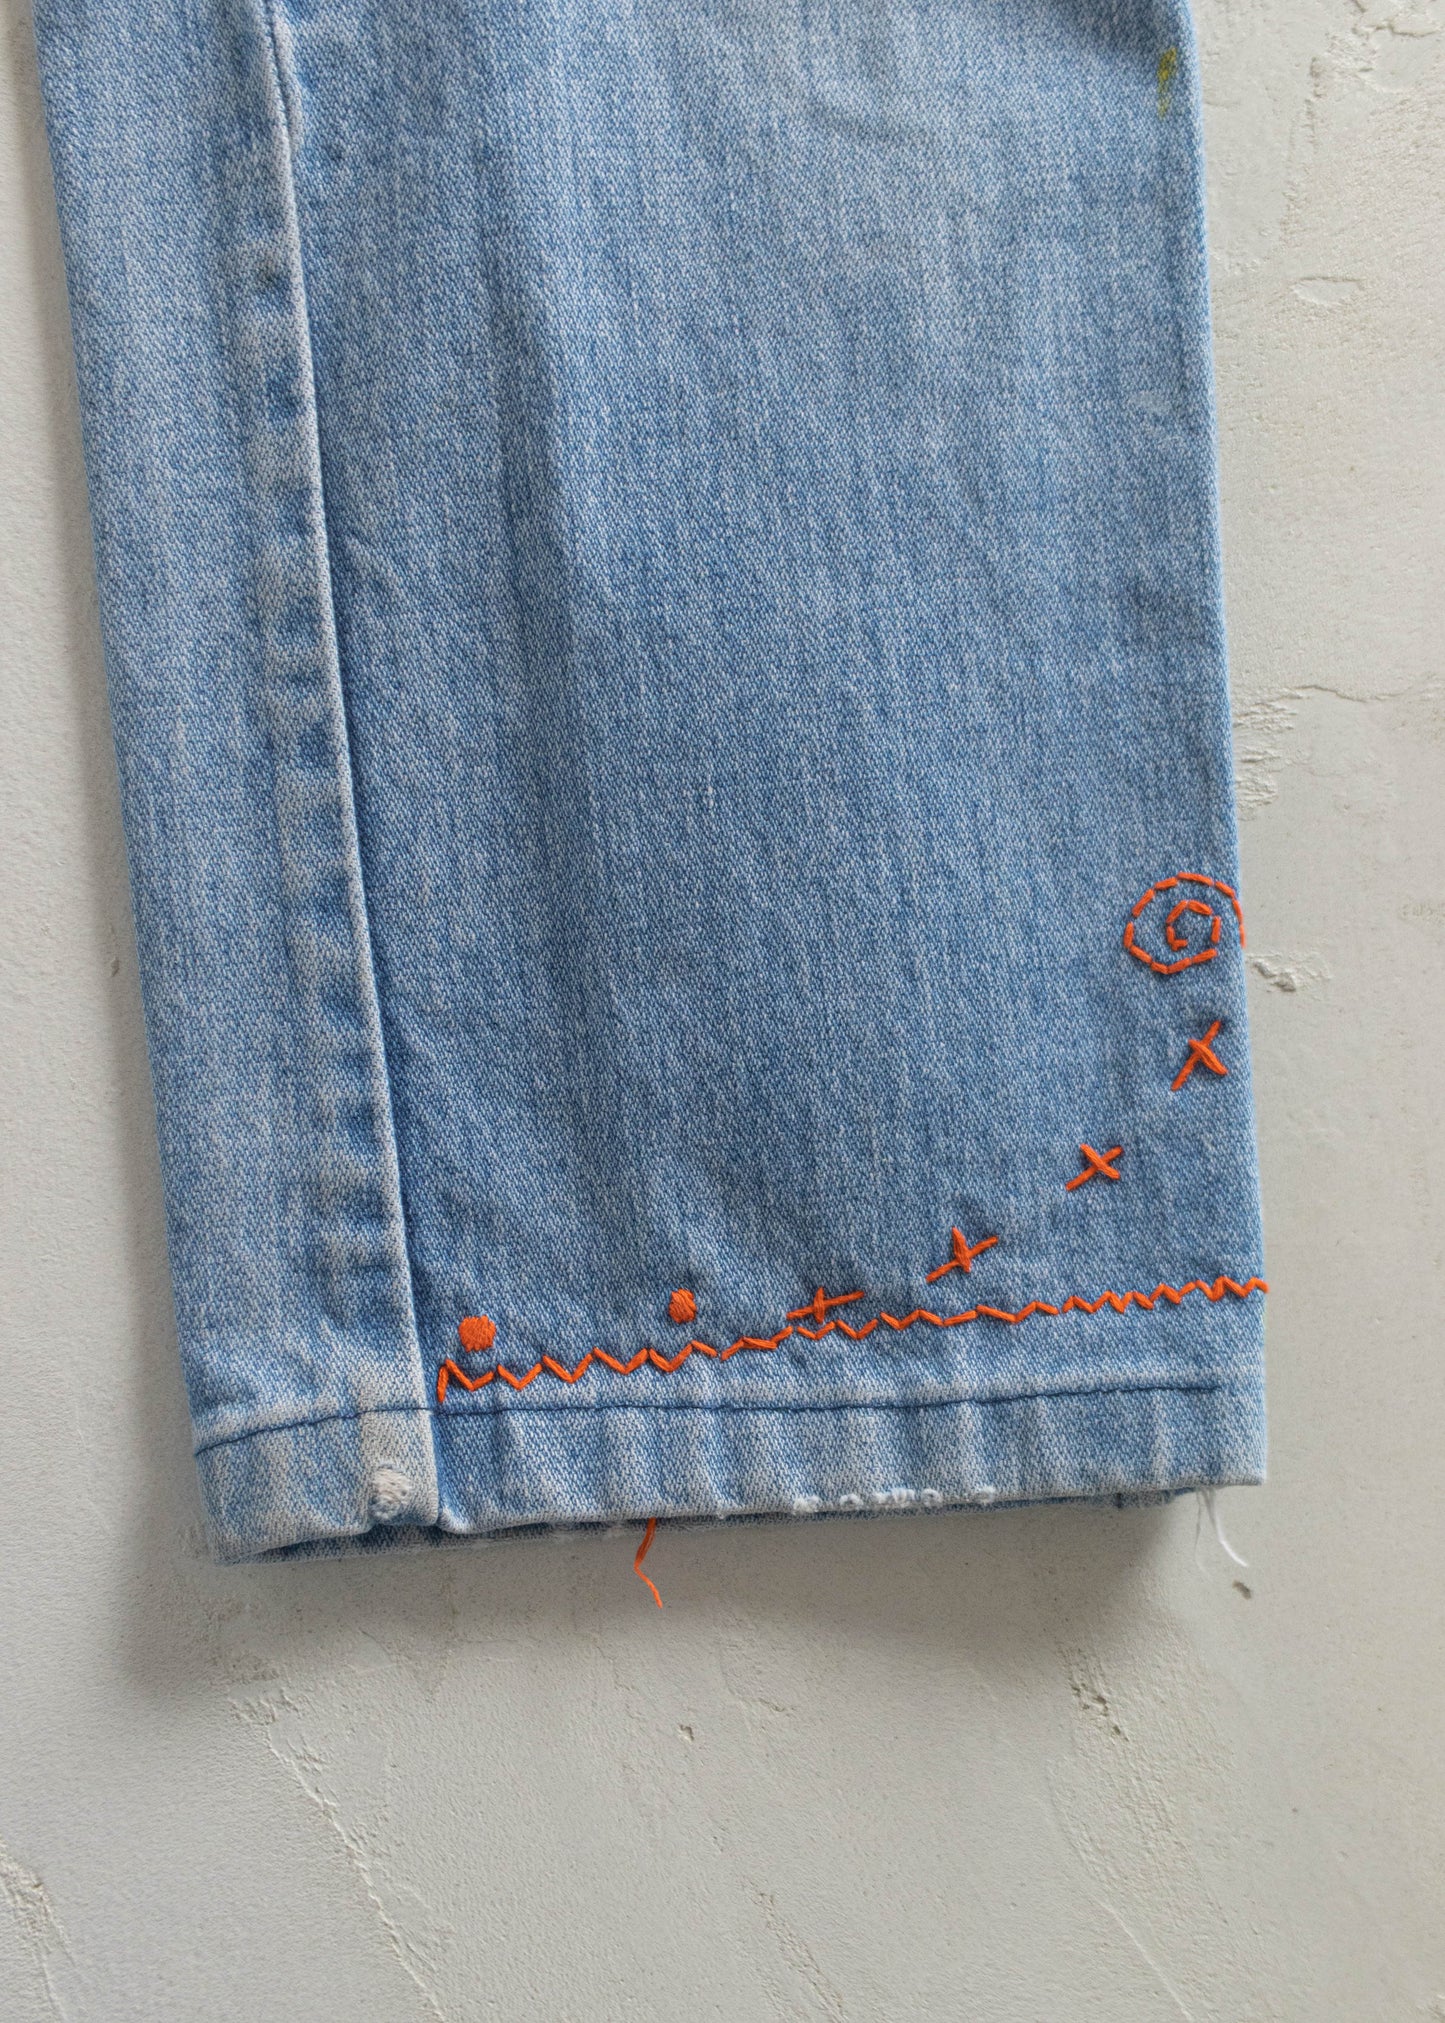 Vintage 1970s GWG Lightwash Embroidered Jeans Size Women's 26 Men's 30